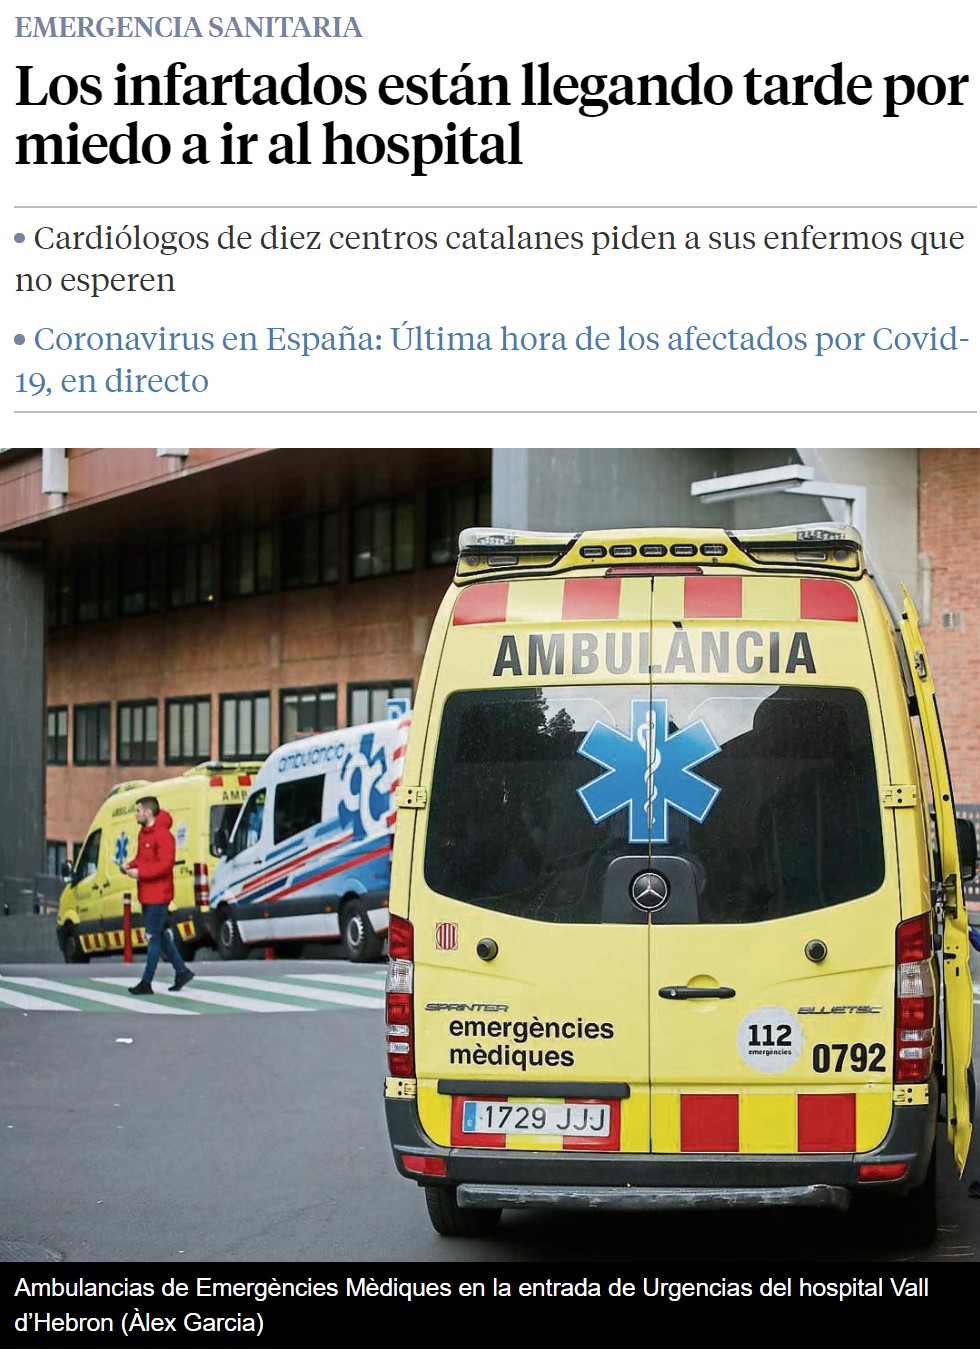 Cardiólogos de 10 hospitales catalanes: “¡La gente está pasando sus infartos en casa por miedo al coronavirus!”